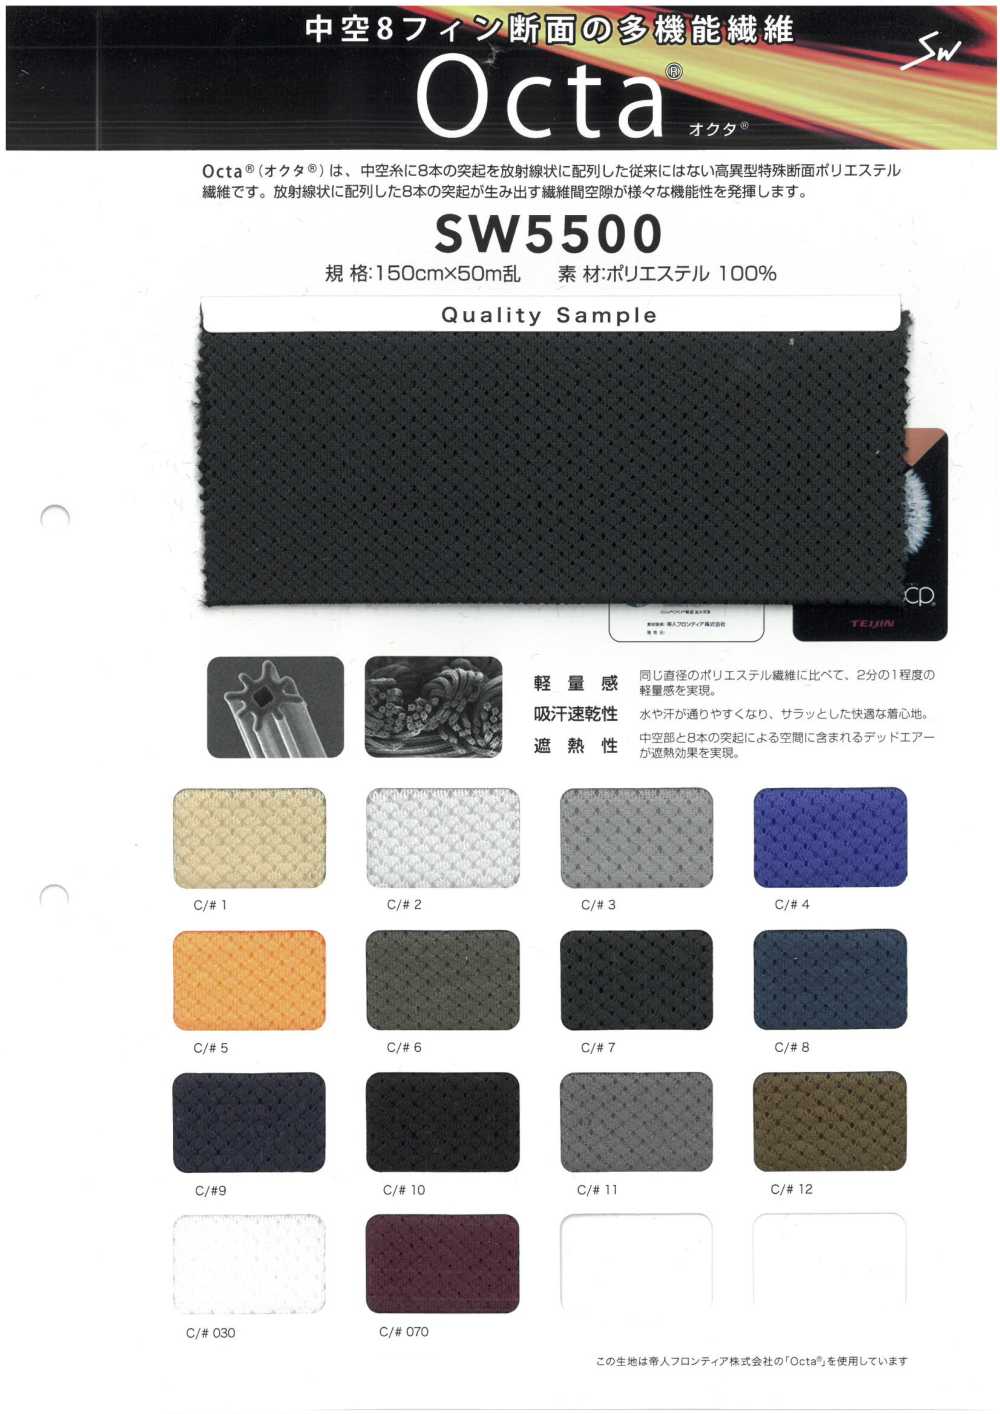 SW5500 Octa®[Fabrication De Textile] Fibres Sanwa